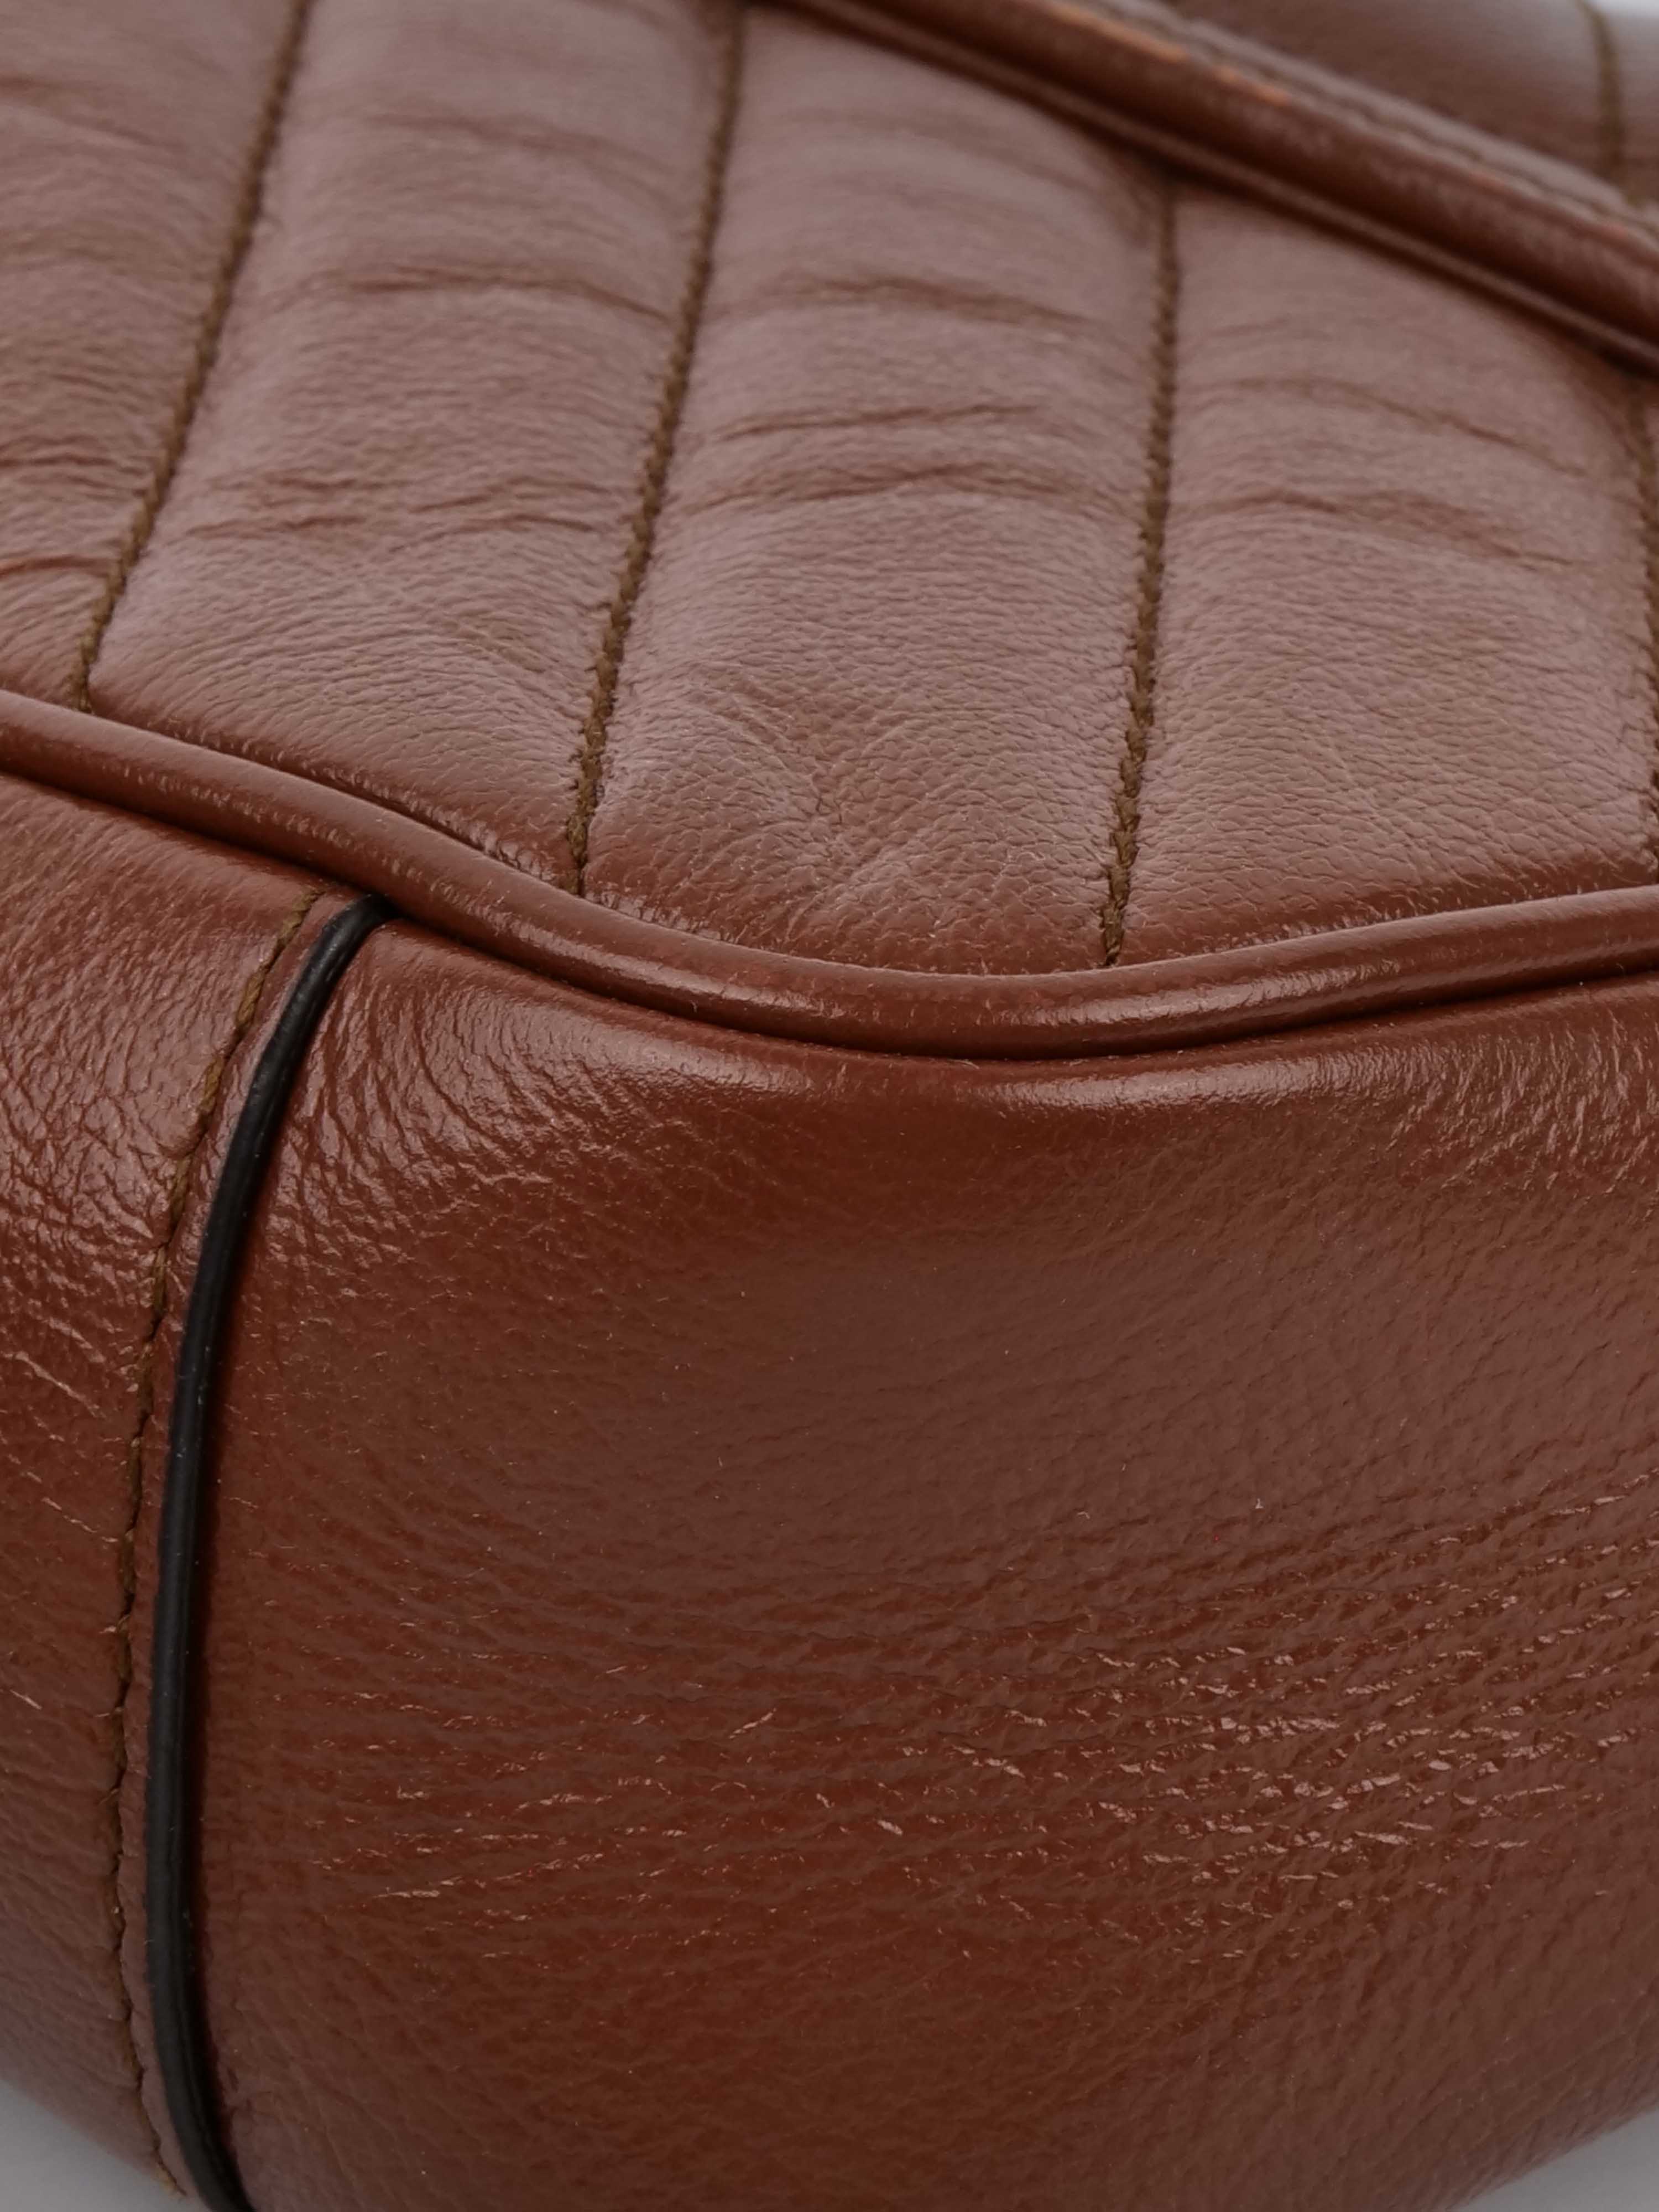 Gucci Mini Marmont Caramel Shoulder Bag.